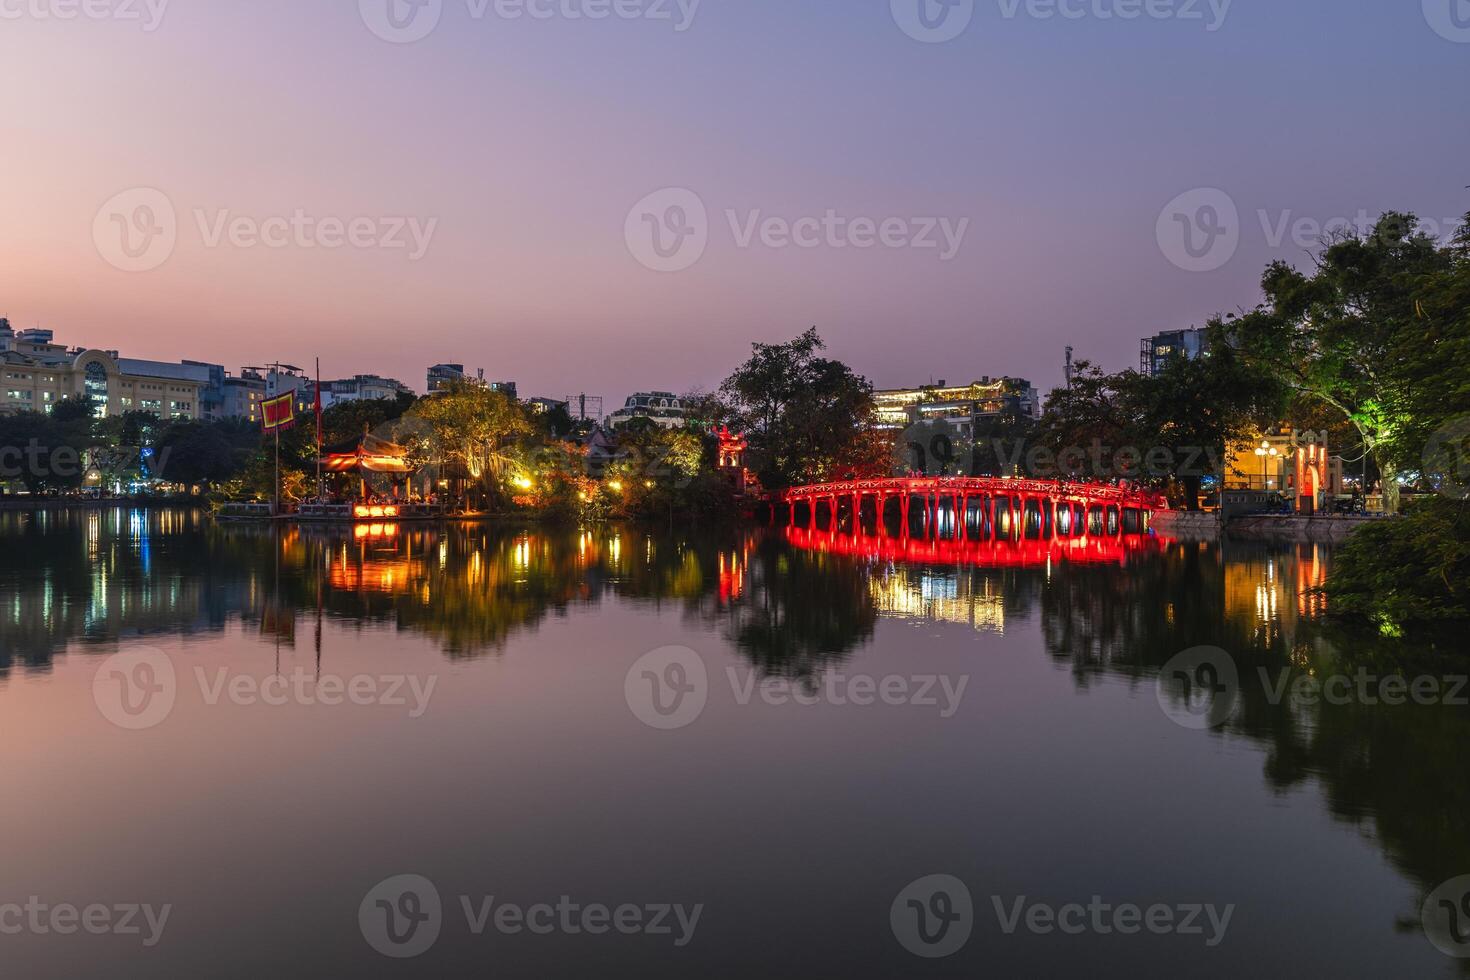 ngoc figlio tempio su un isolotto nel ciao kiem lago, hanoi, Vietnam. foto